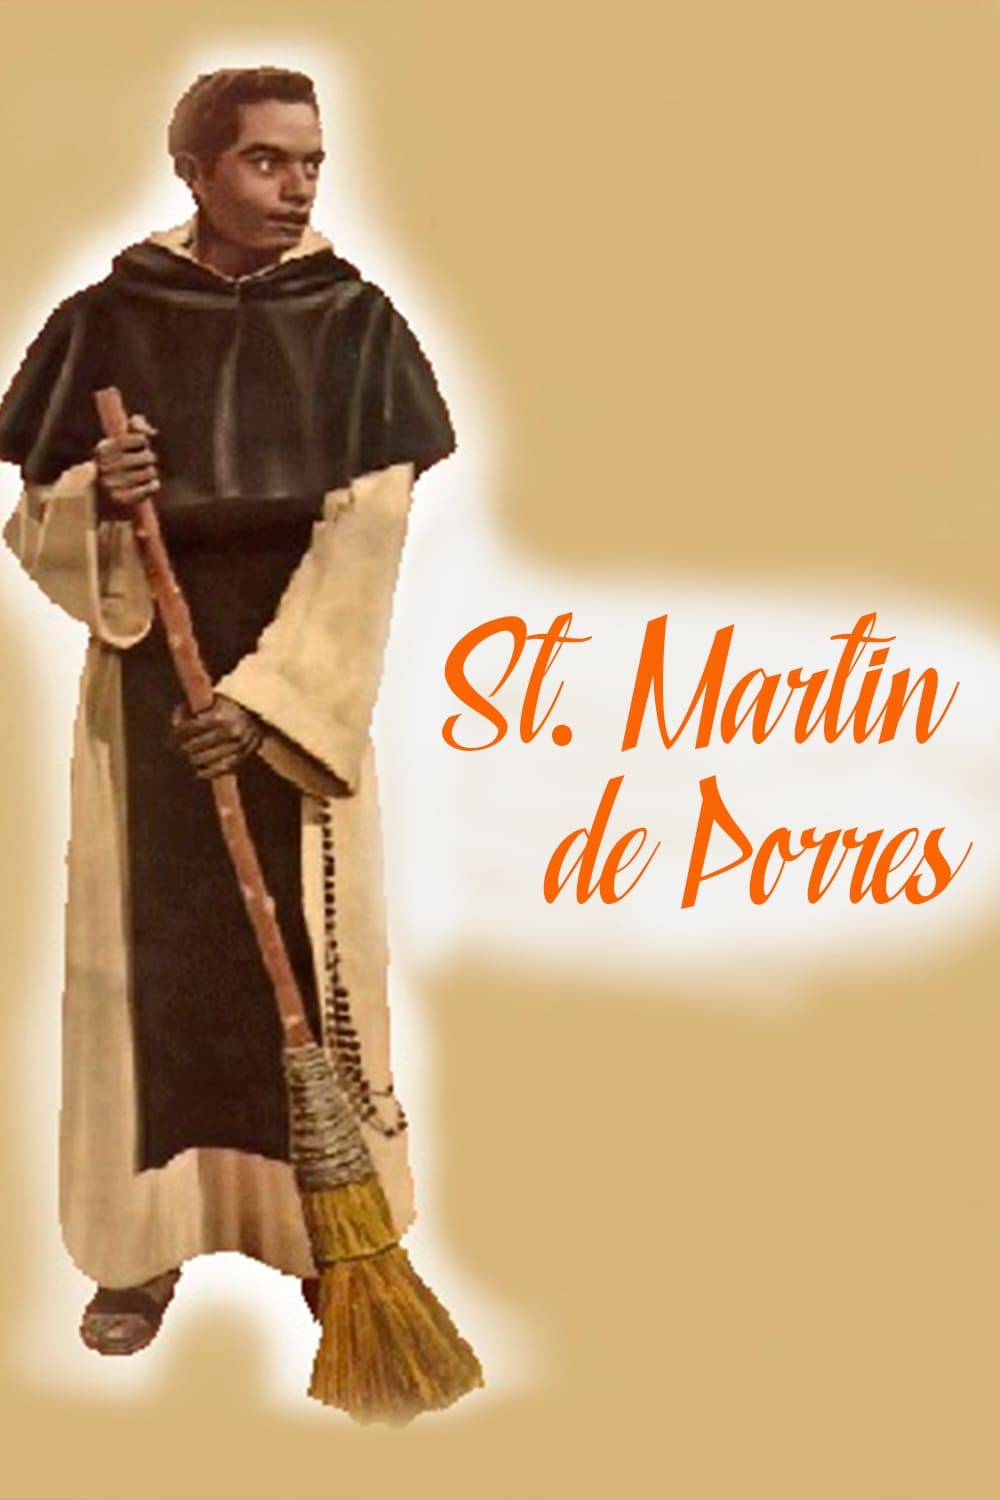 A Mulatto Named Martín